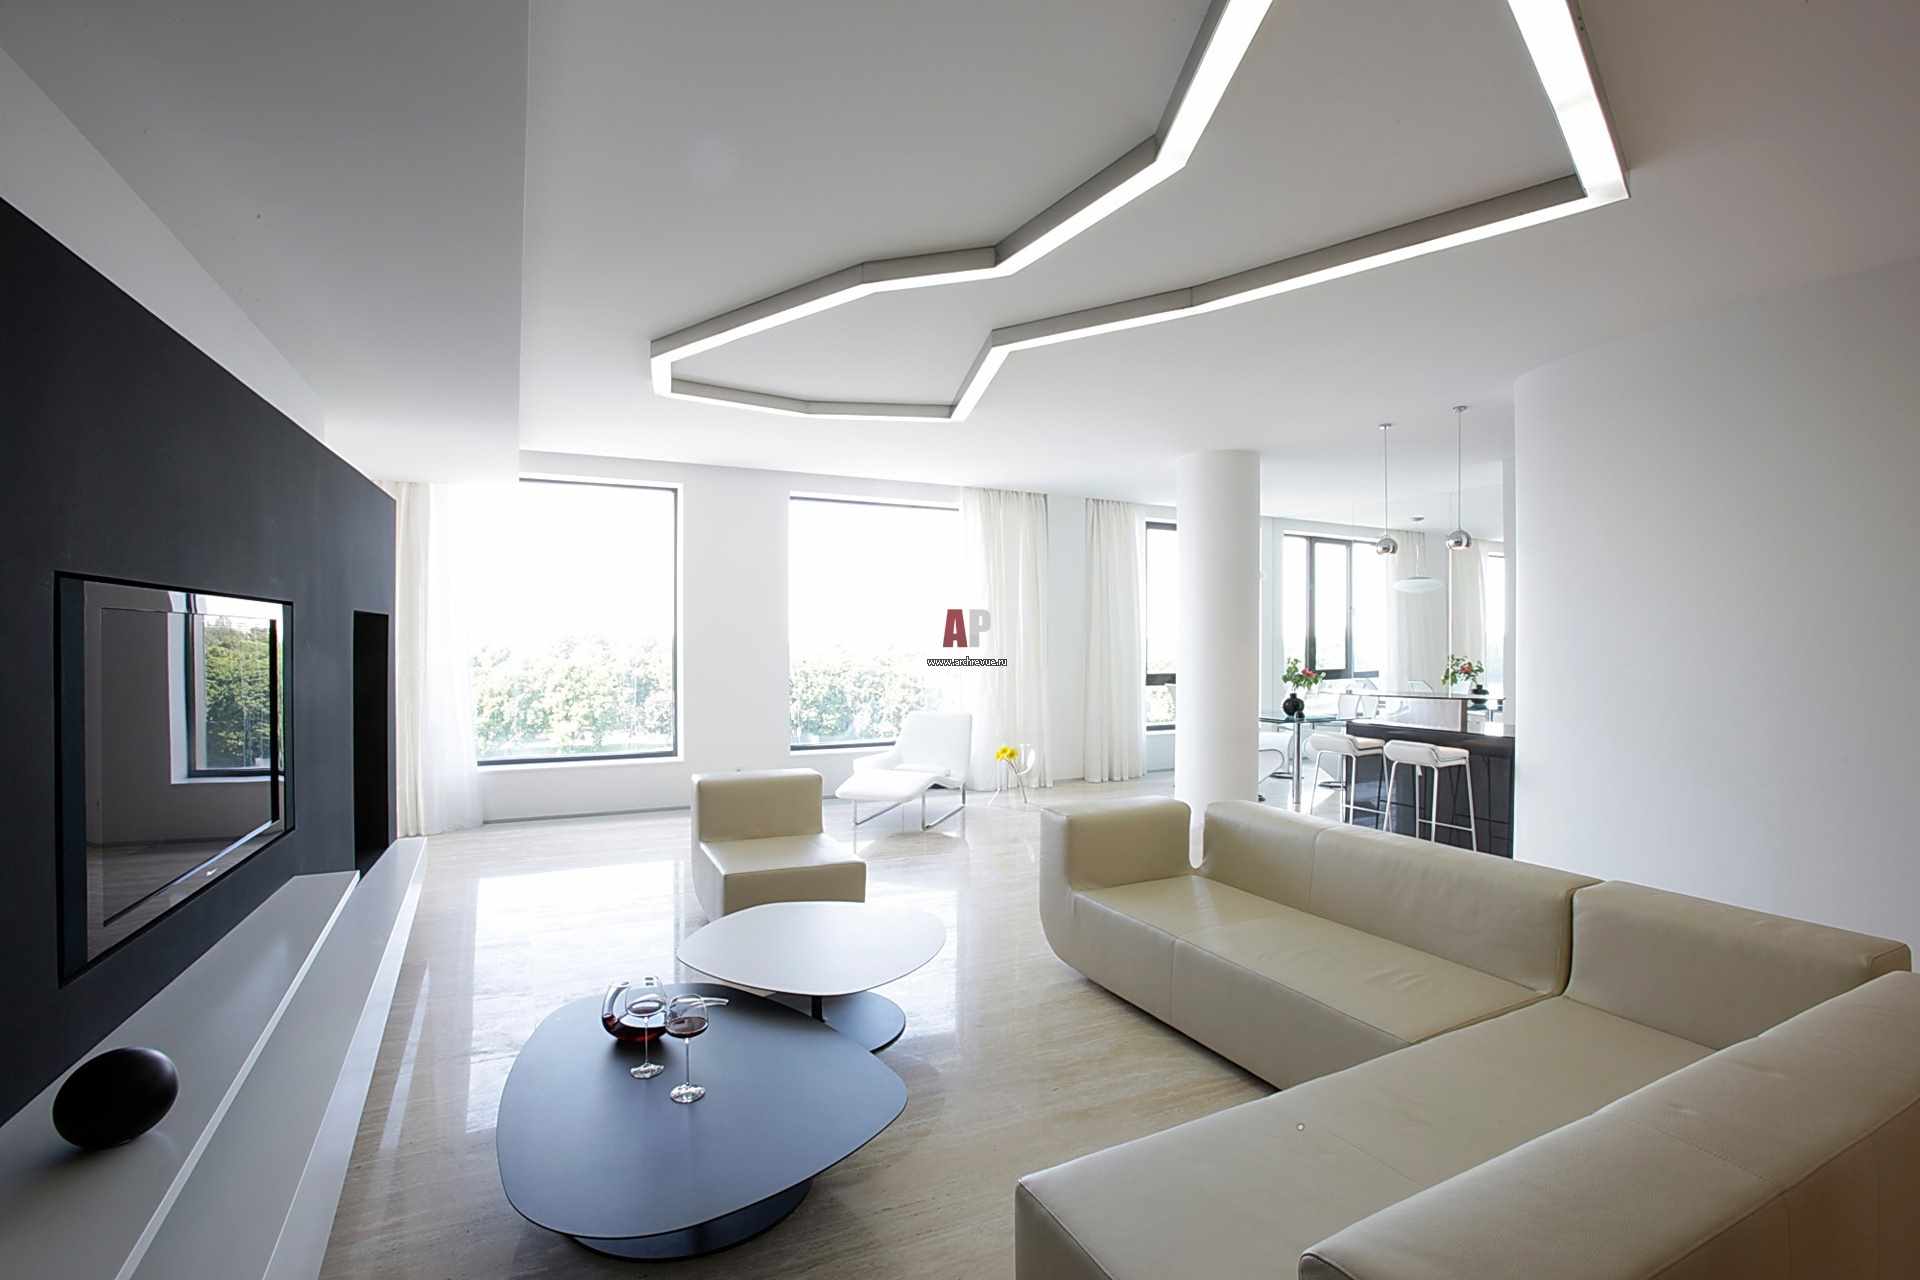 minimalizm tarzında alışılmadık bir oturma odası tasarımı örneği